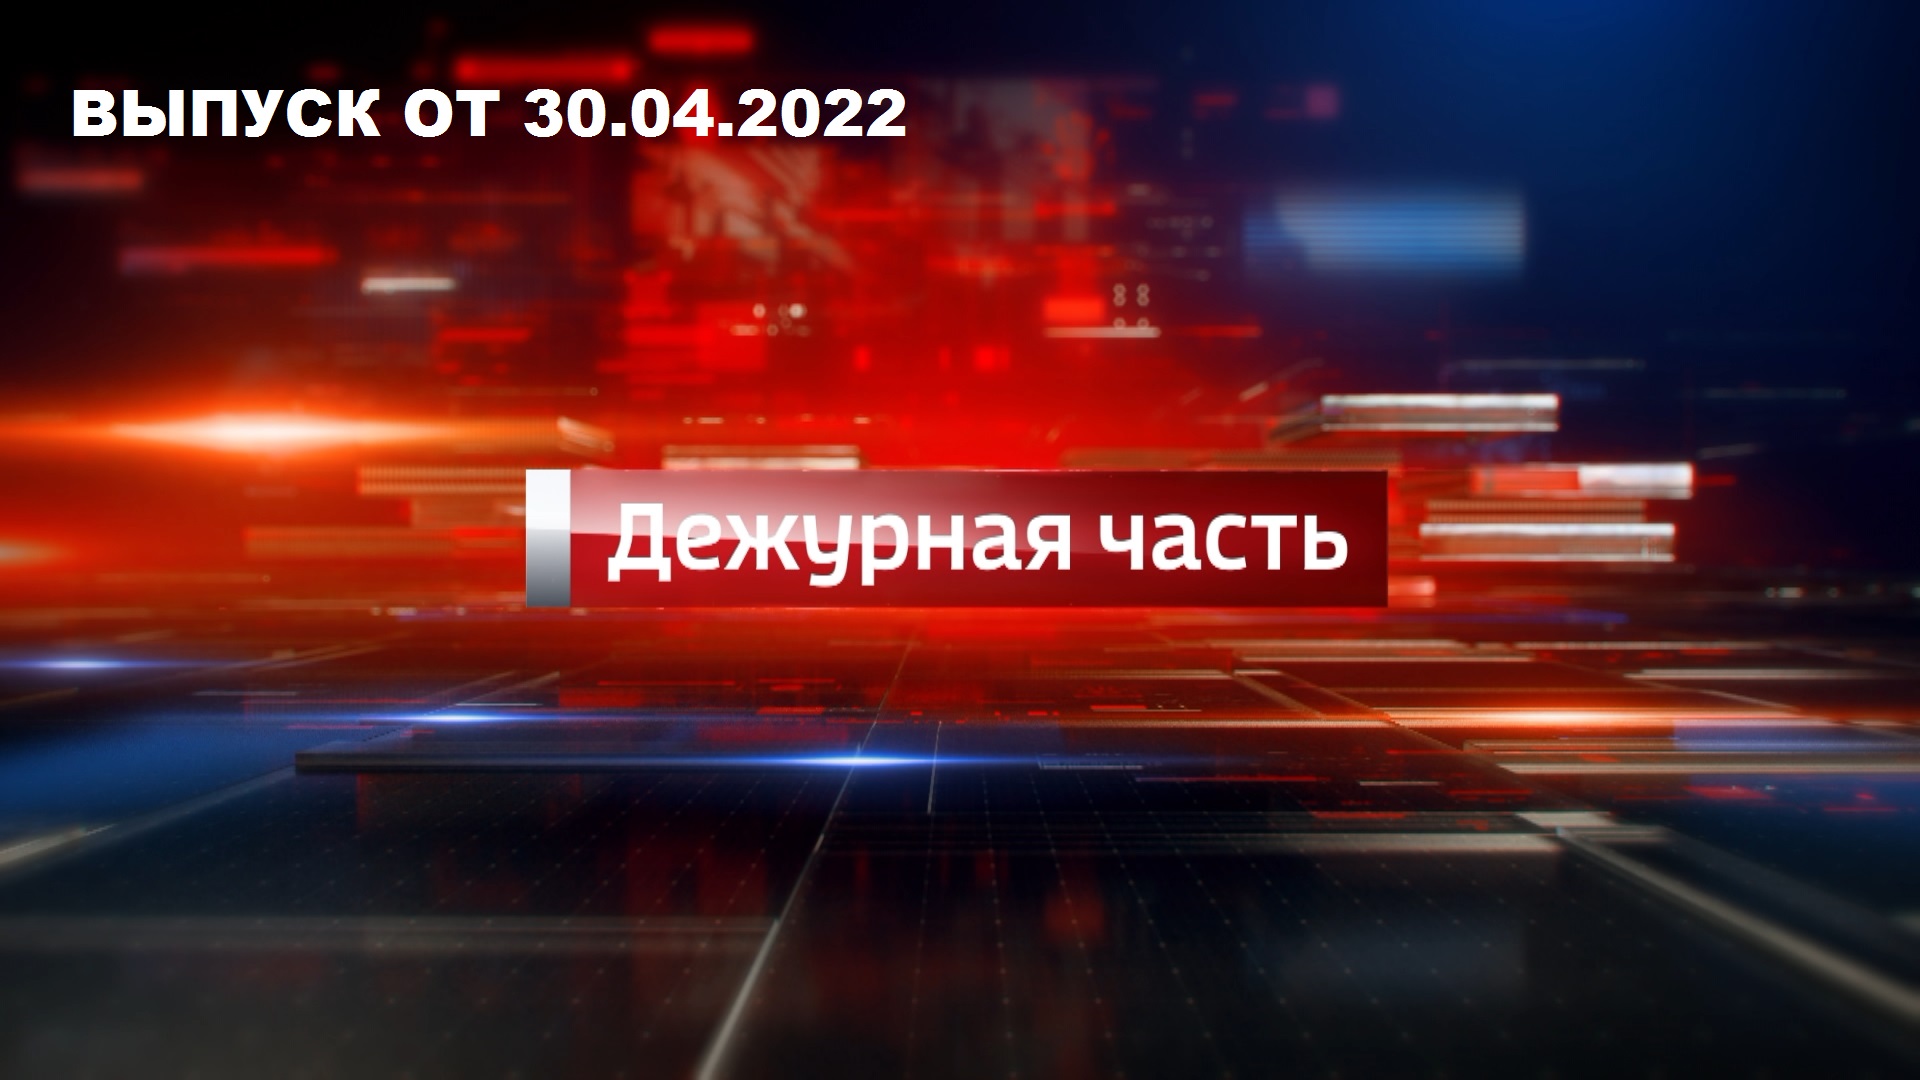 Вести. Дежурная часть — эфир от 30 апреля 2022 года